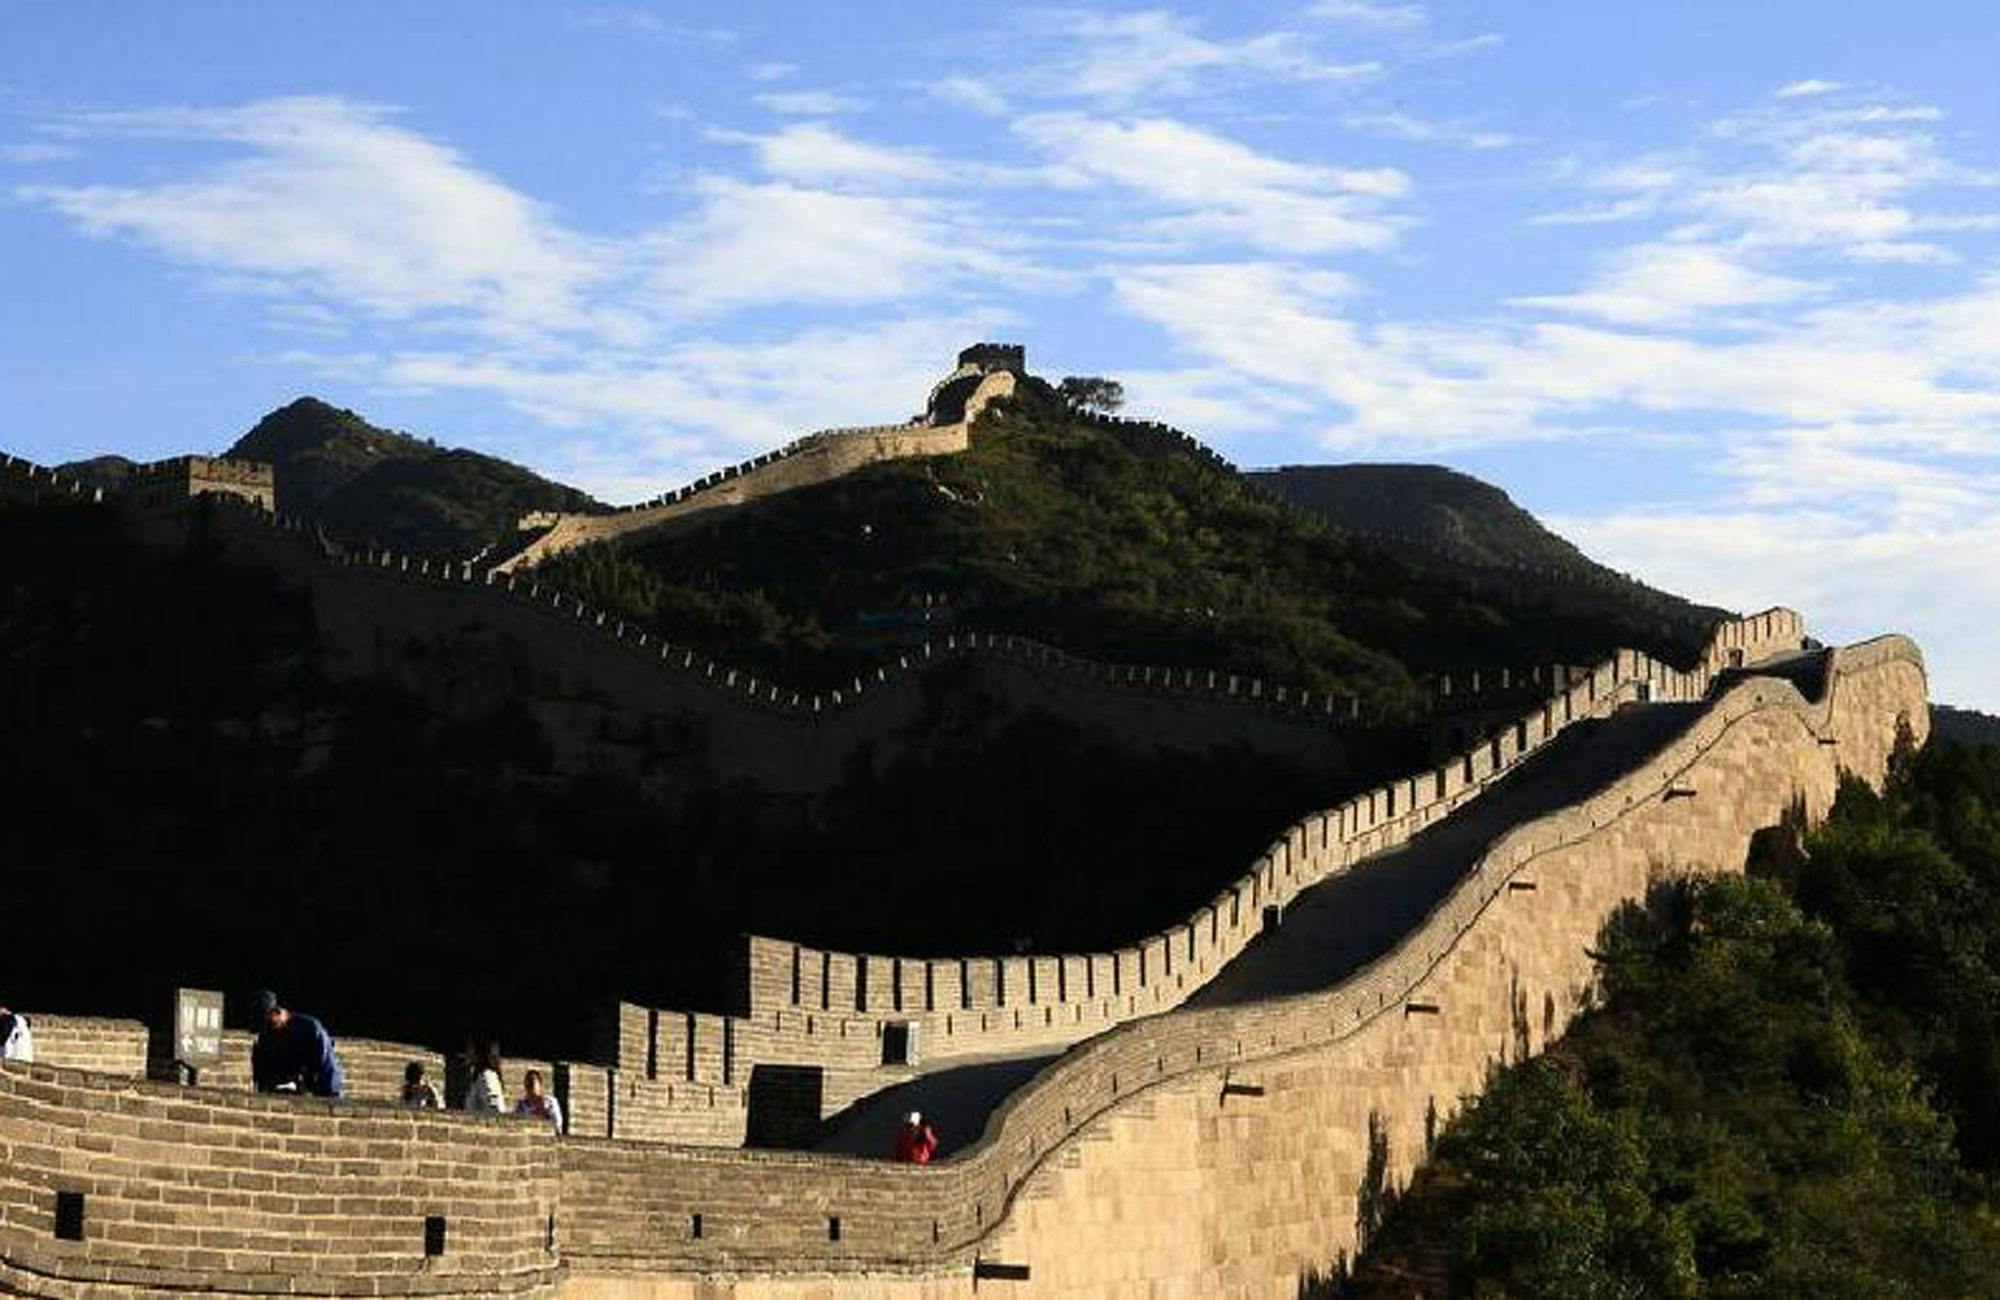 Postój w Pekinie: wycieczka po Wielkim Murze Mutianyu z transferem na lotnisko